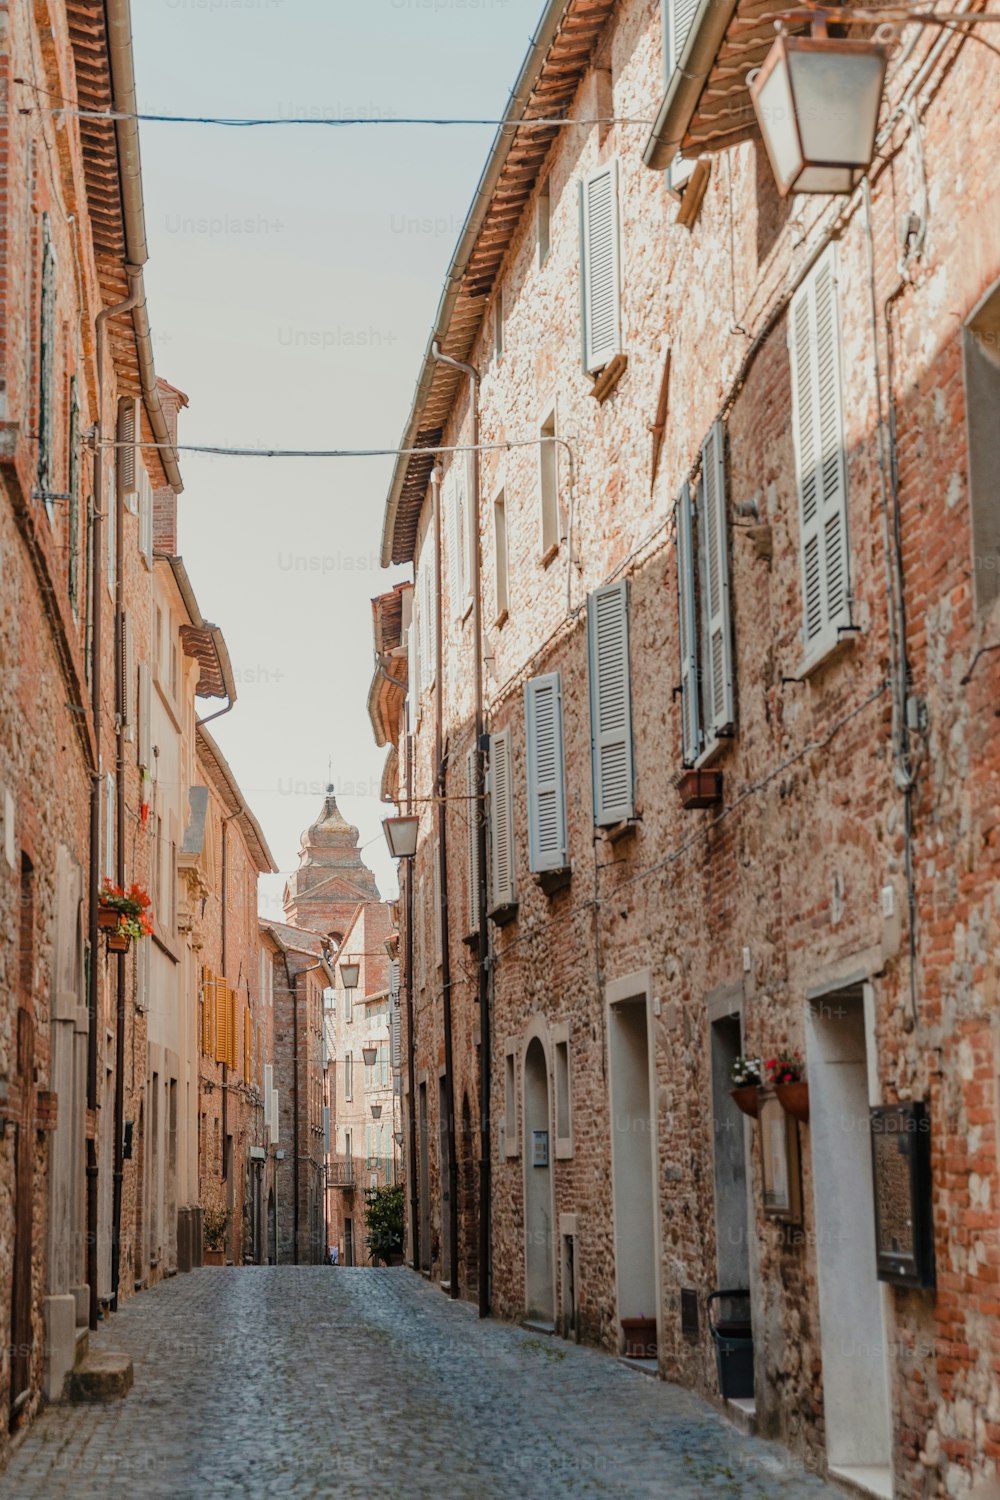 Una calle empedrada en una antigua ciudad europea